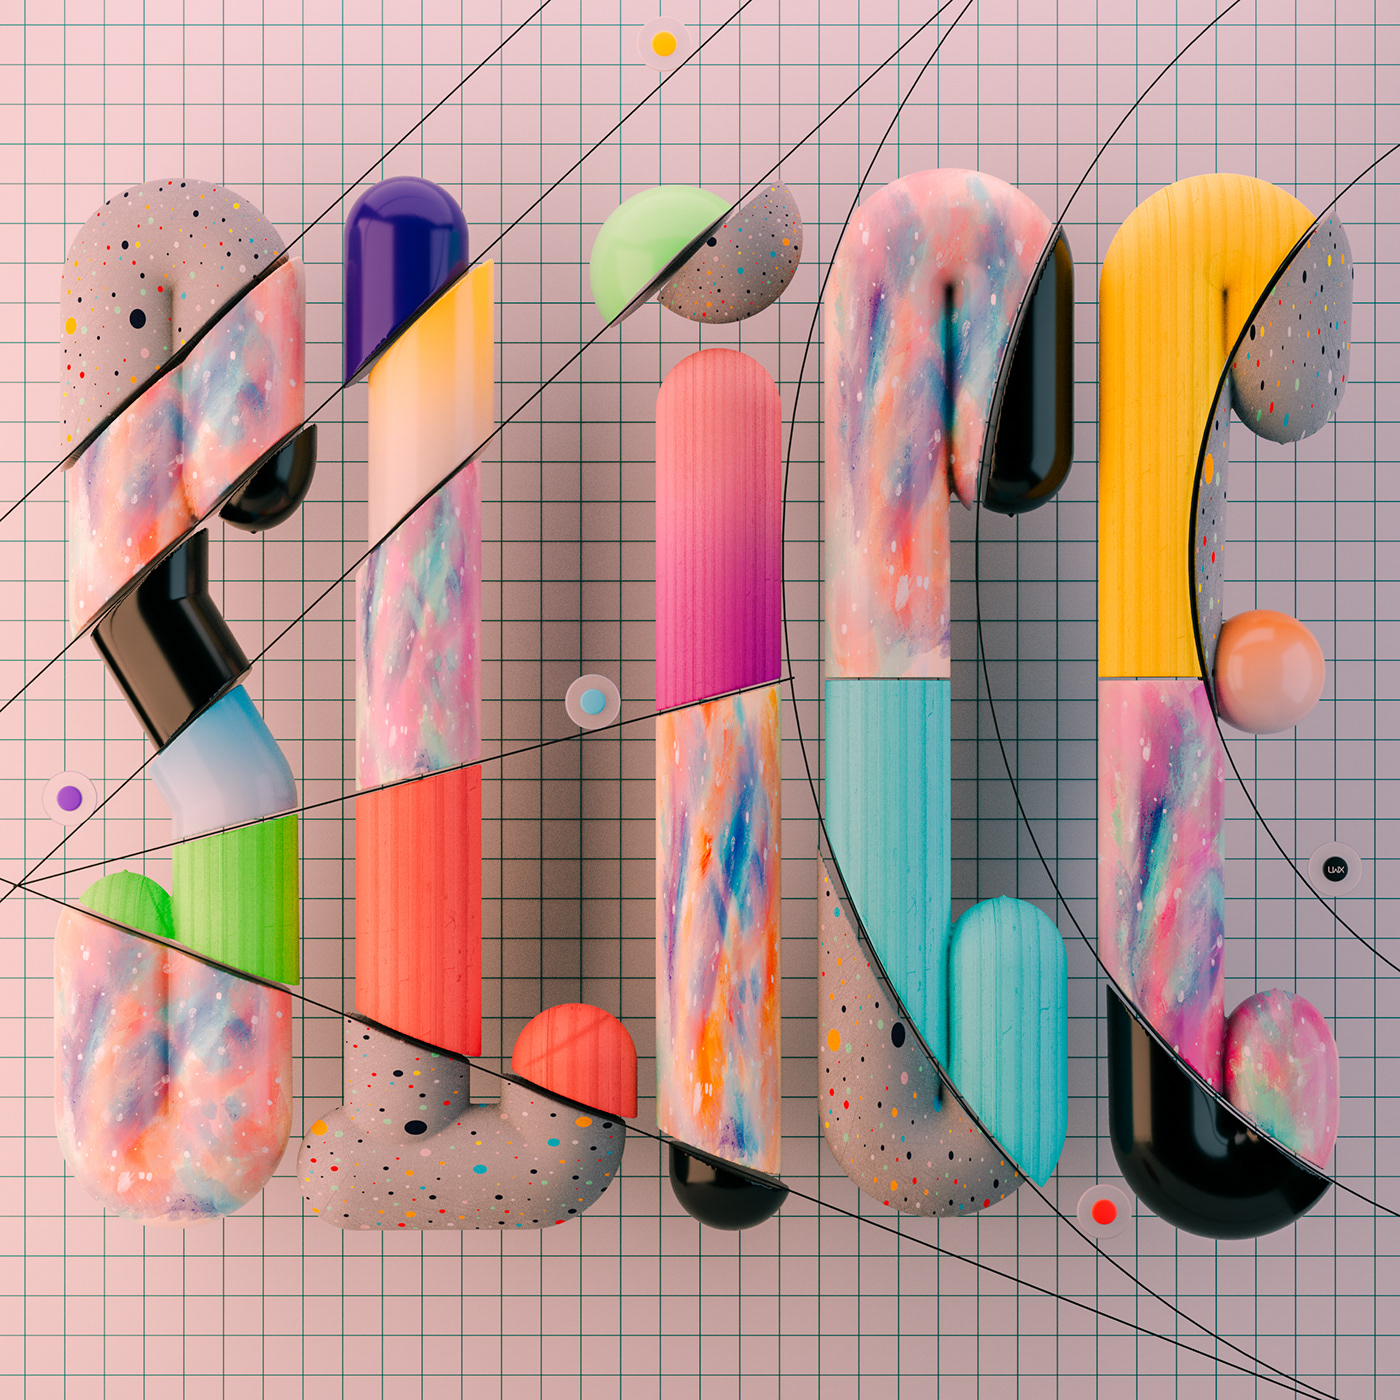 3dart 3dsculpture 3DType colorful cut handmadetextures line art scissors typography   vector